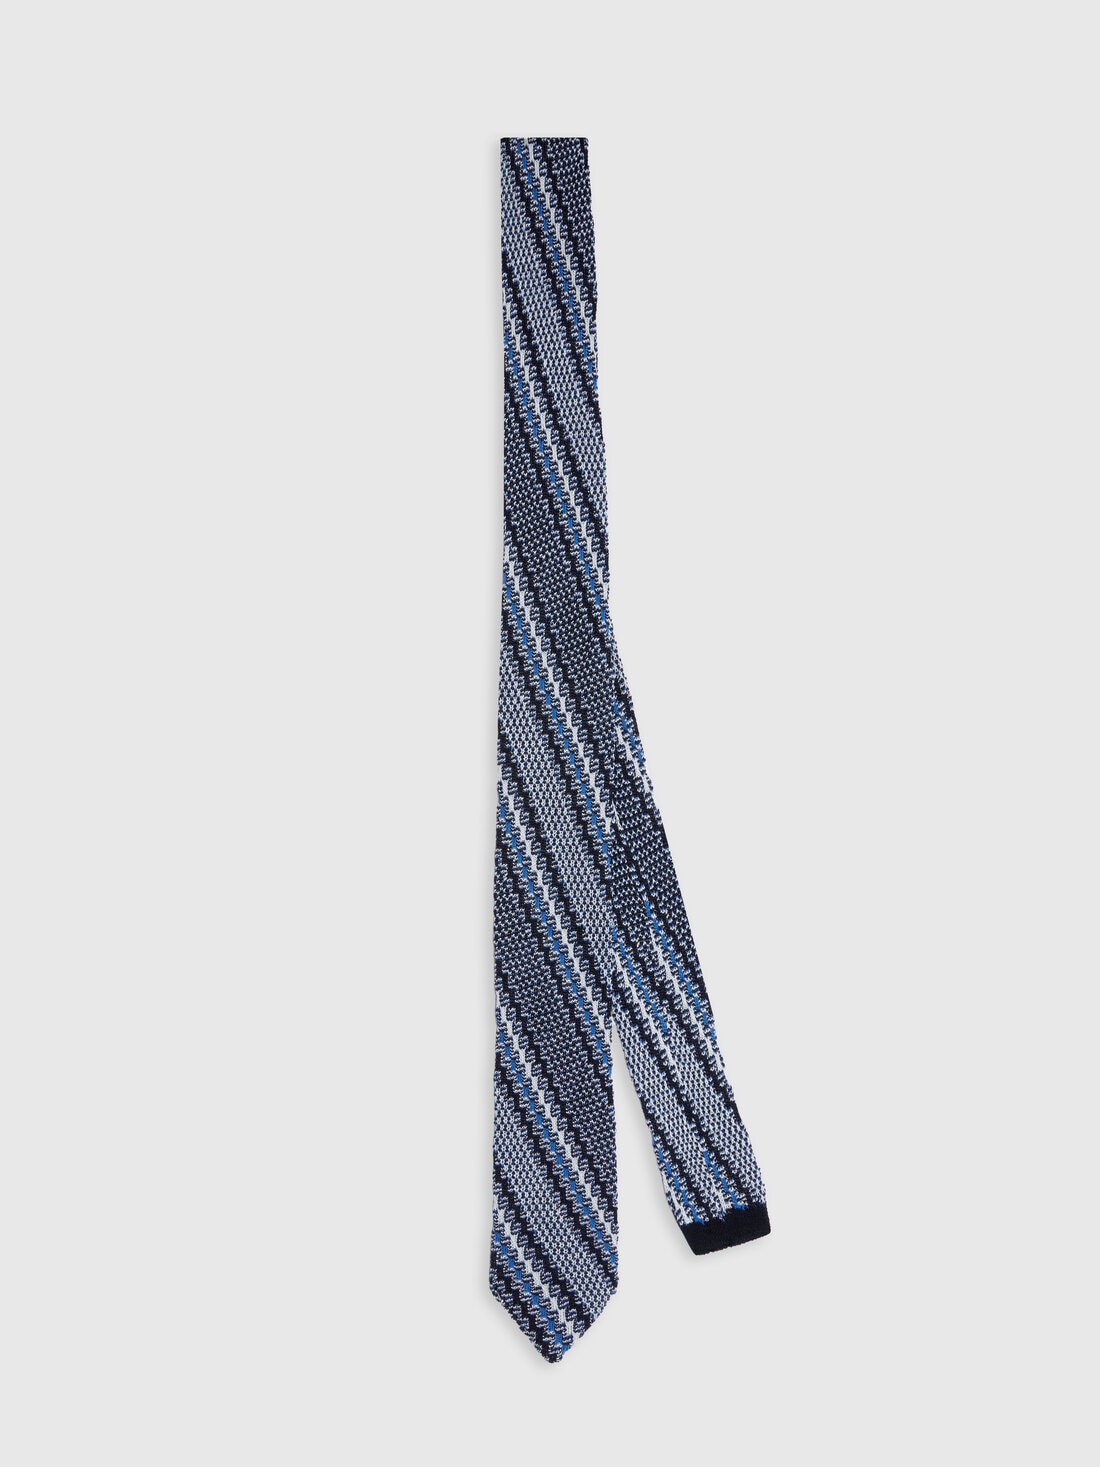 Corbata de algodón y lino con bordados, Multicolor  - 8053147141879 - 0